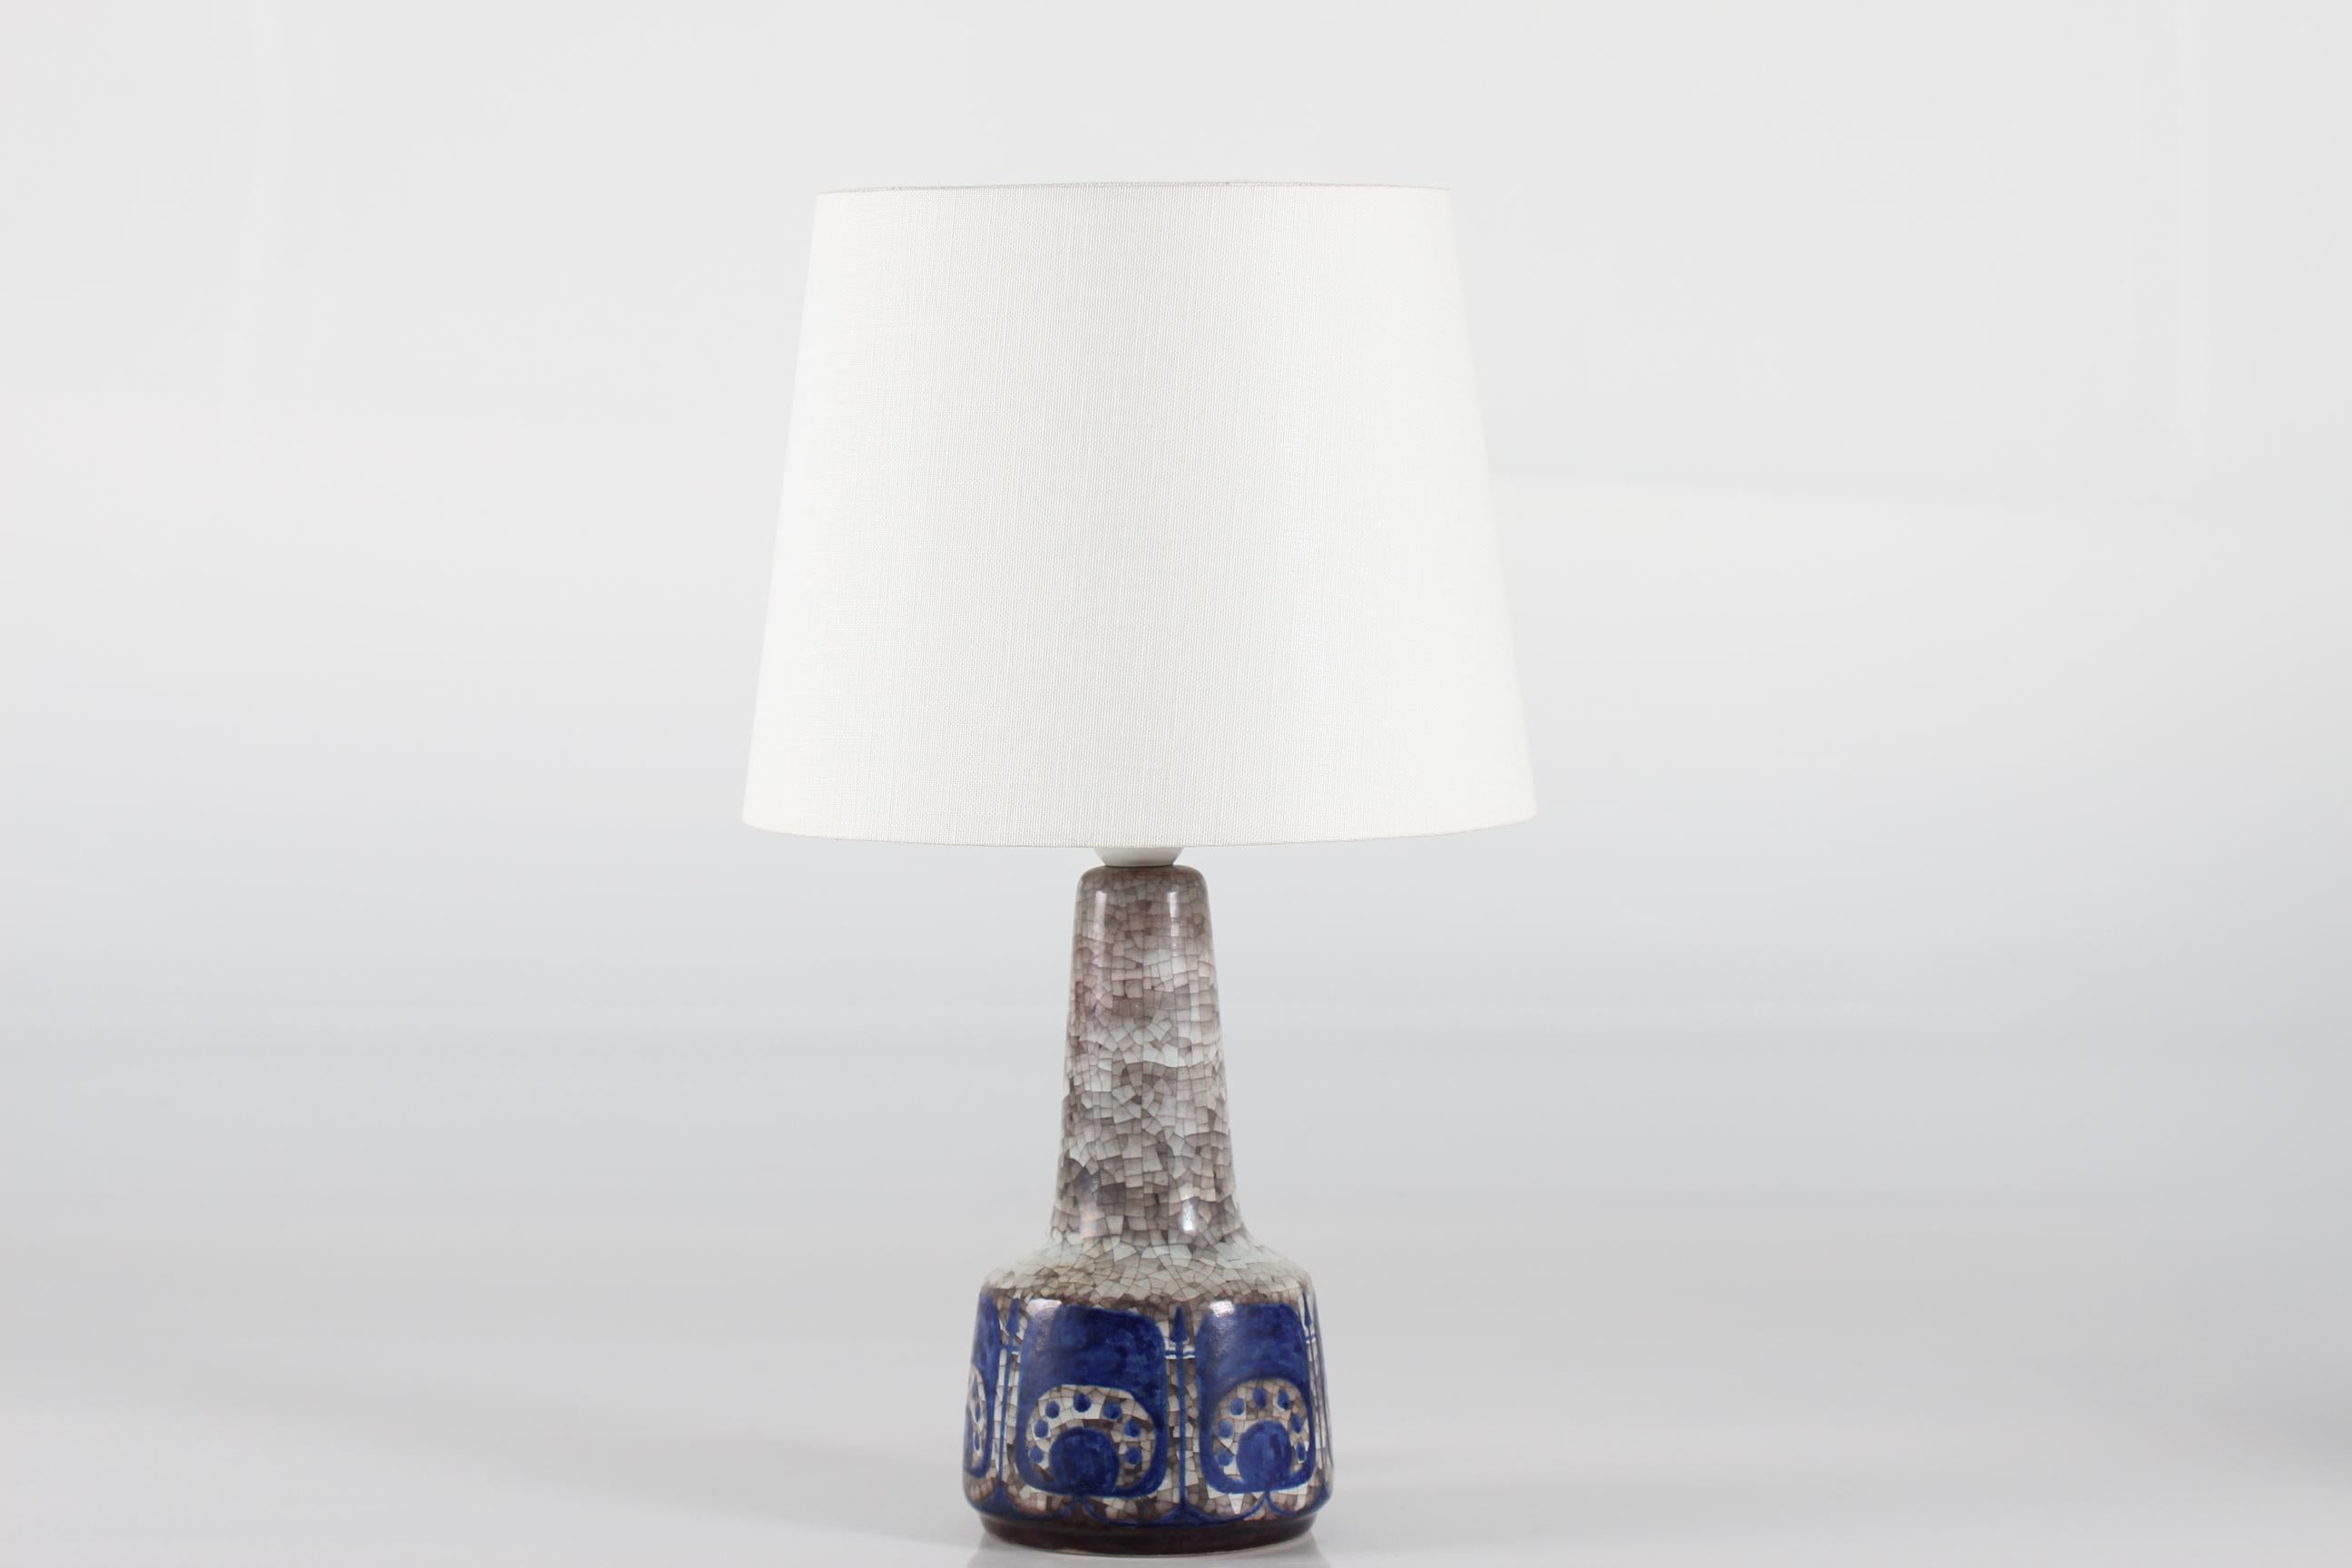 Dänische Tischleuchte aus der Mitte des Jahrhunderts von Marianne Starck für Michael Andersen & Søn.
Die Lampe ist mit der Persia-Glasur in Blau und Grau verziert, die ein abstraktes Blumendekor mit Anklängen an die islamische Kunst